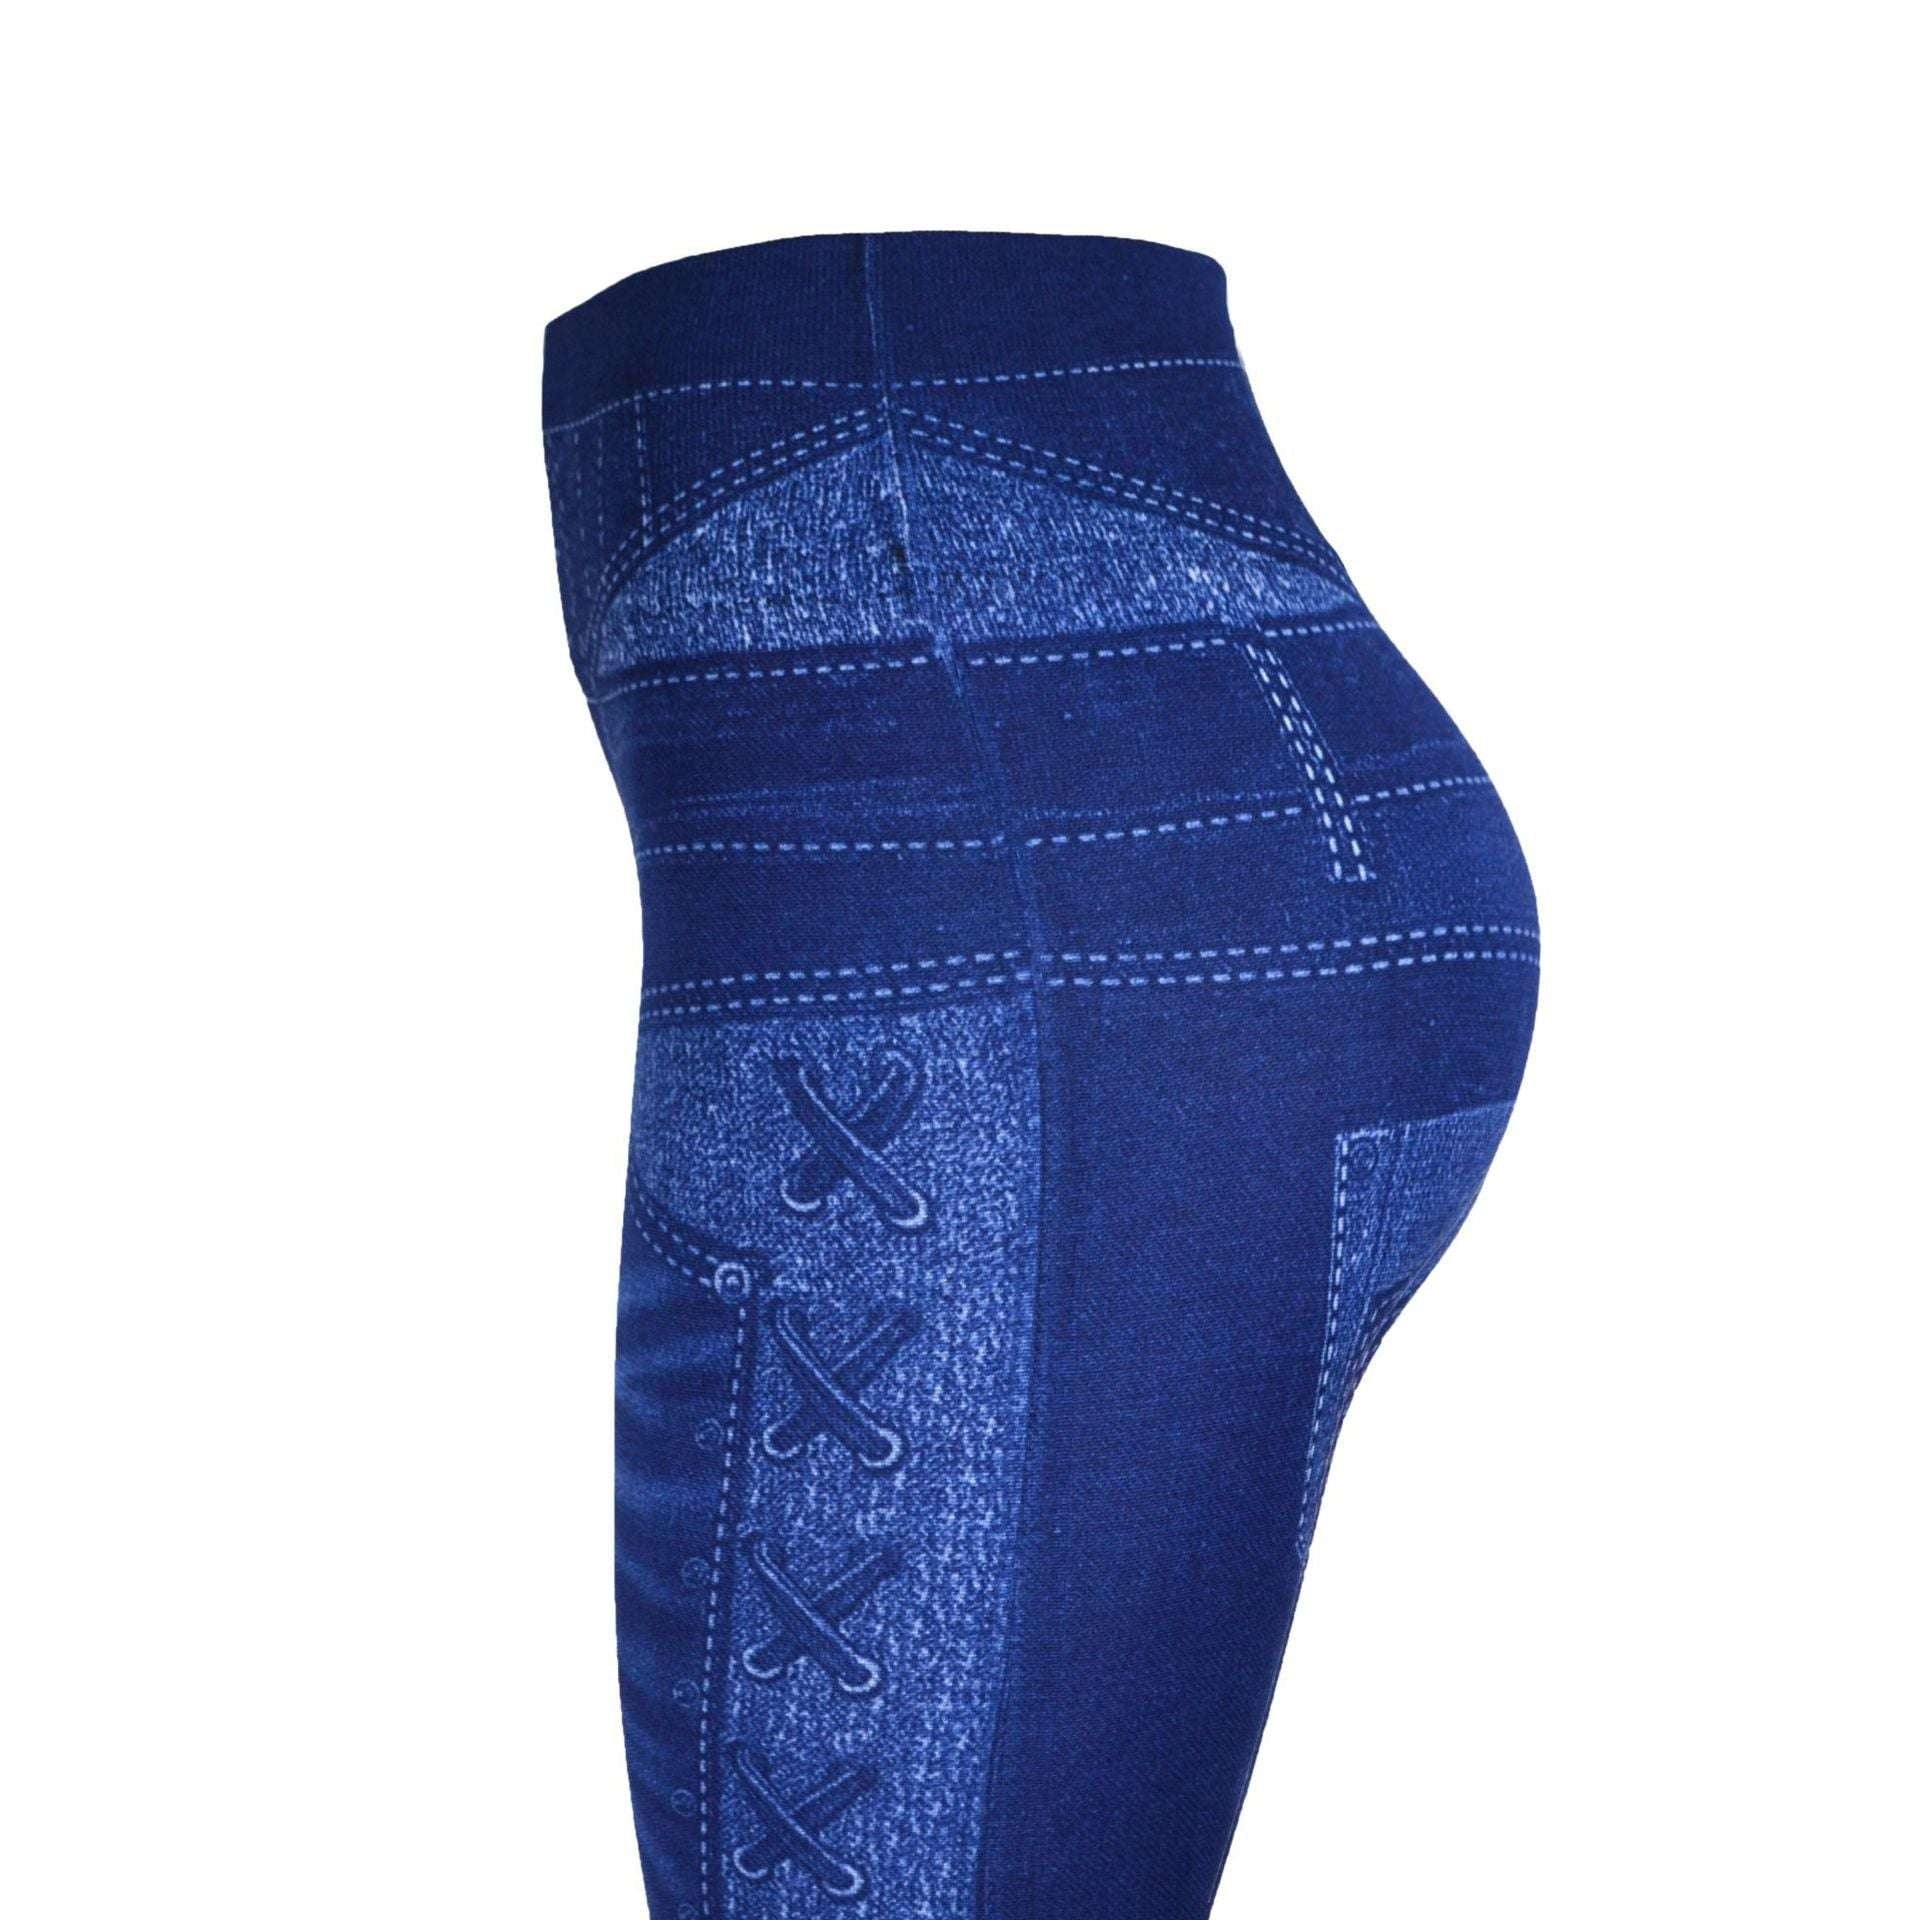 breathable jeans leggings, slim fit leggings, women denim jeggings - available at Sparq Mart